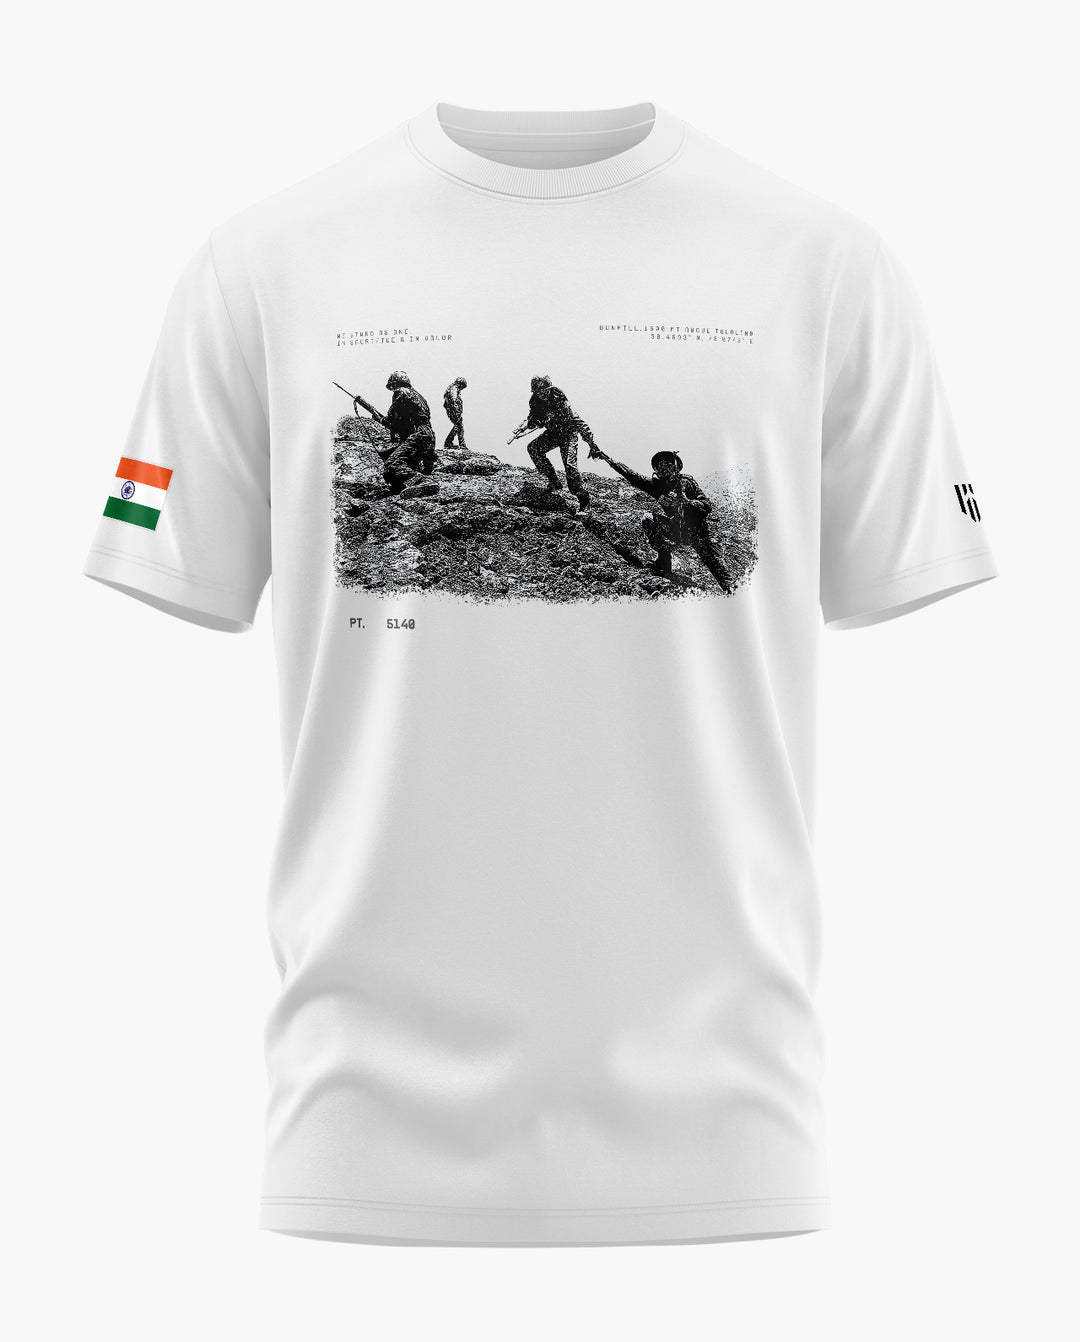 PT 5140 Kargil T-Shirt